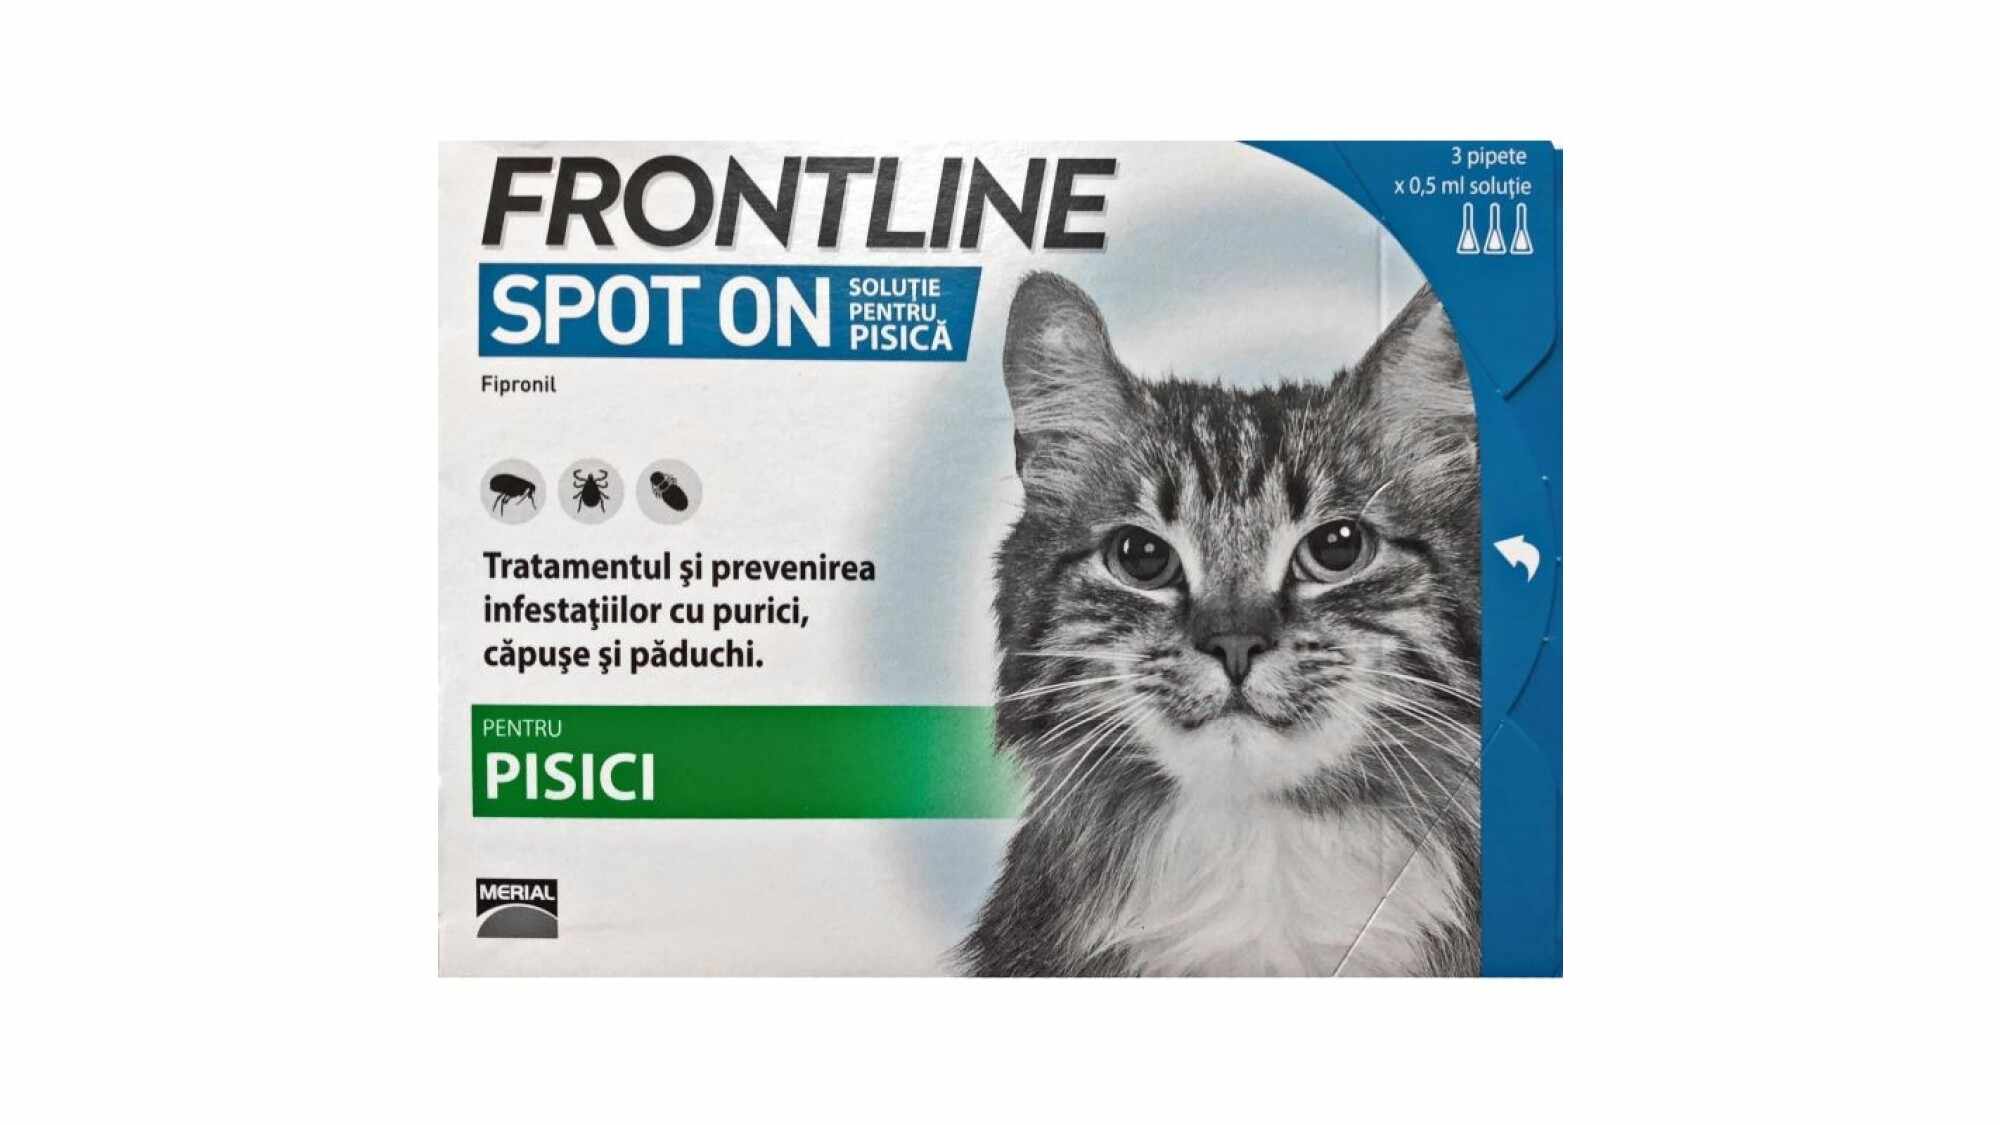 Frontline Spot On Pisica, 1 Pipeta